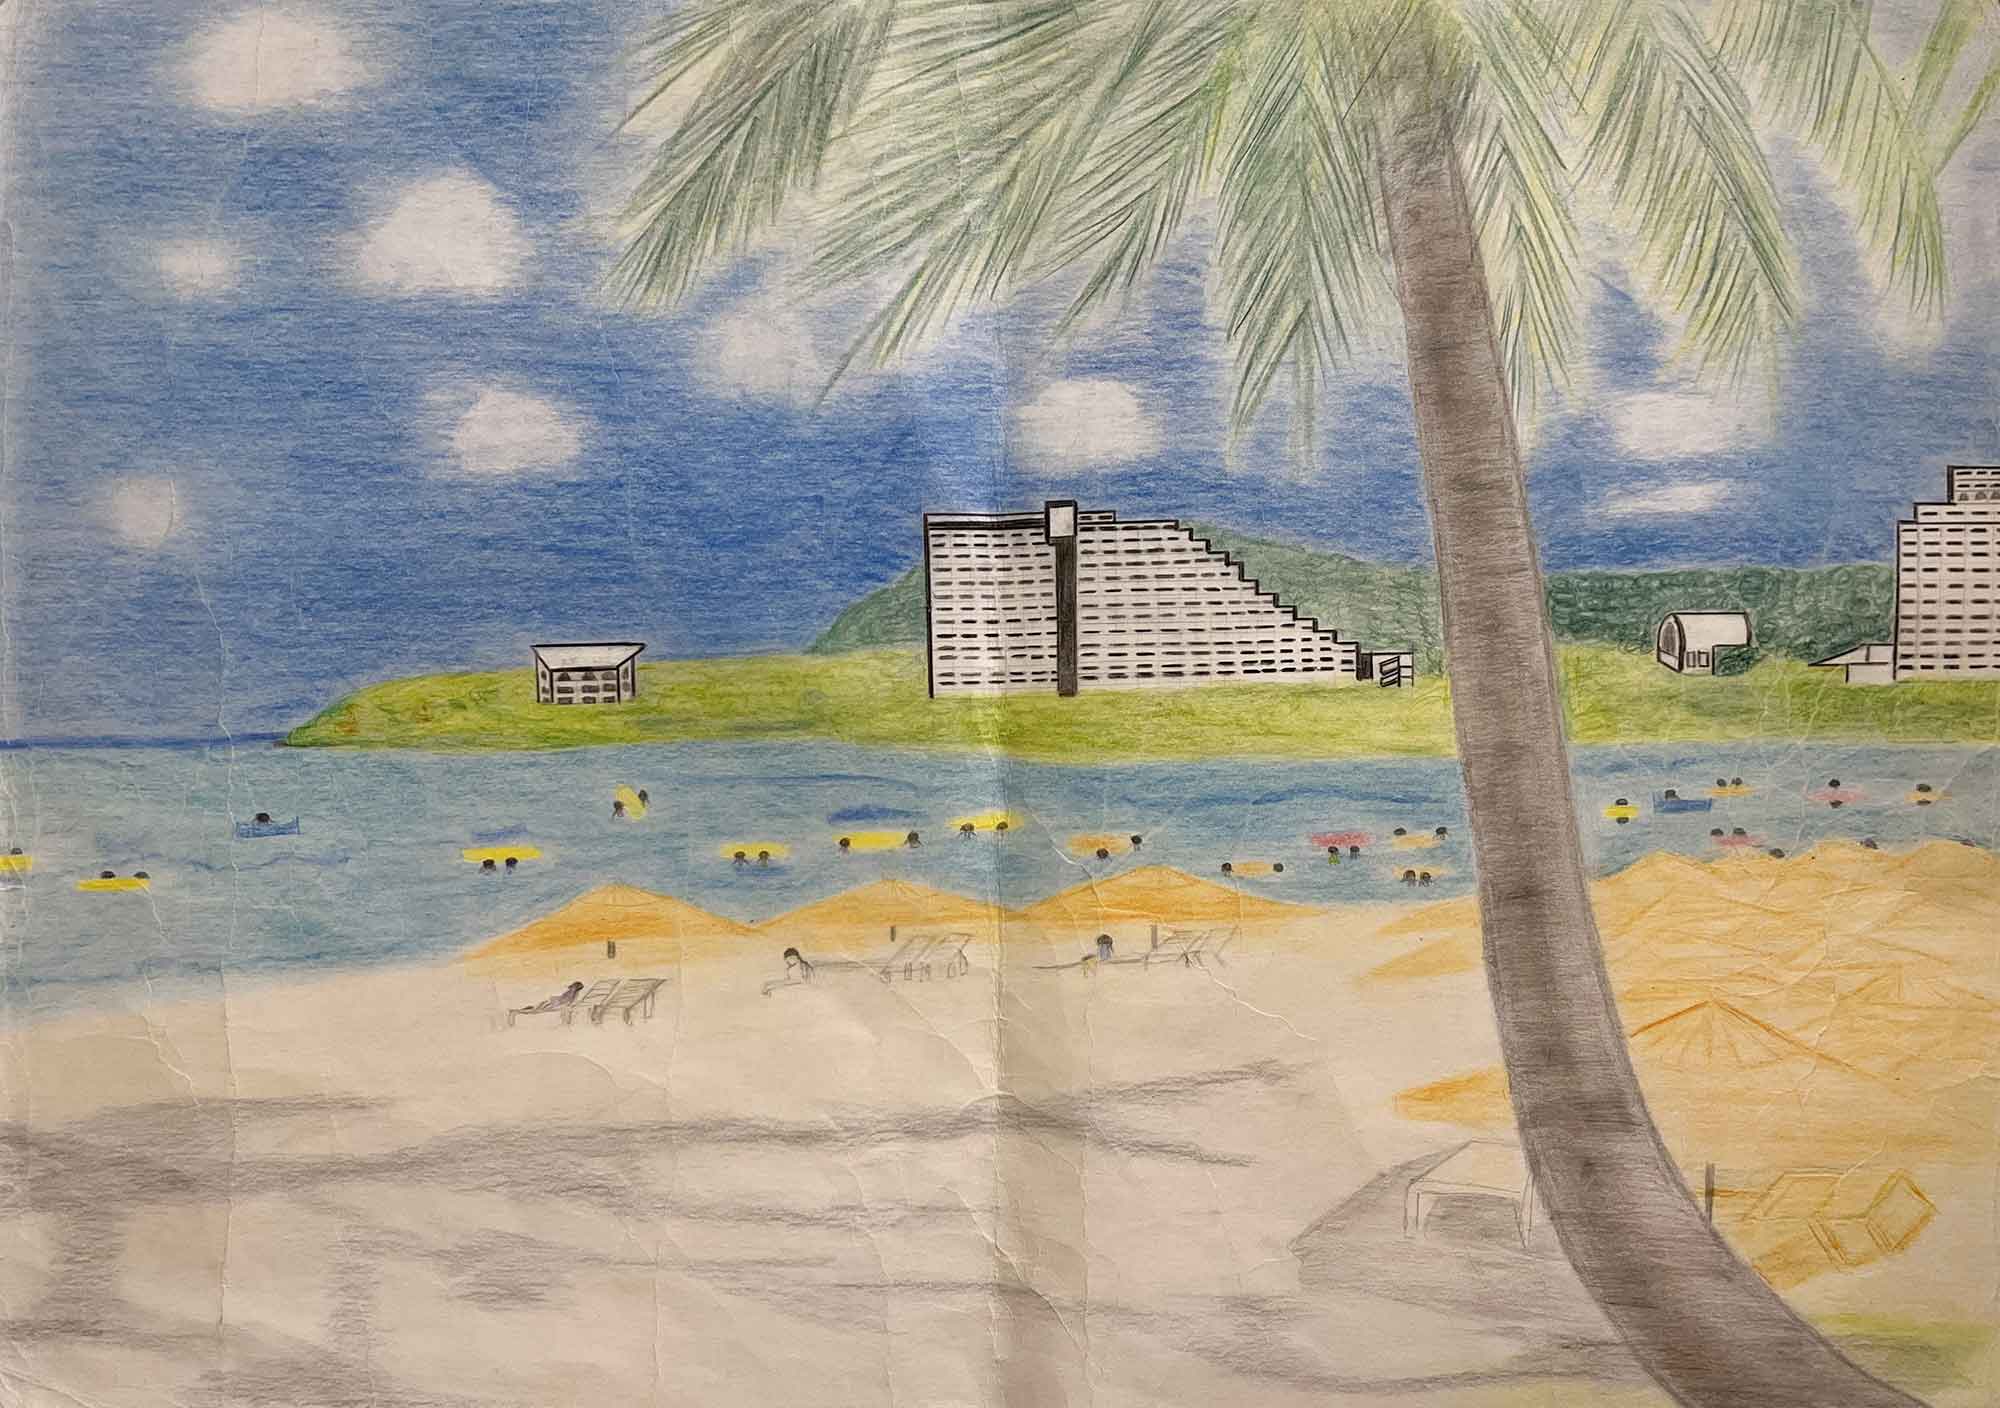 右下から大きなヤシの木が伸び、画面上方にはみ出すほど葉を広げています。その奥に砂浜があり、青い海が広がっています。海の向こう岸は緑が多く、ホテルのような白い建物があります。砂浜にはビーチベッドに寝そべる人々が、海には黄色や赤のサーフボードで遊ぶ人々が描かれています。